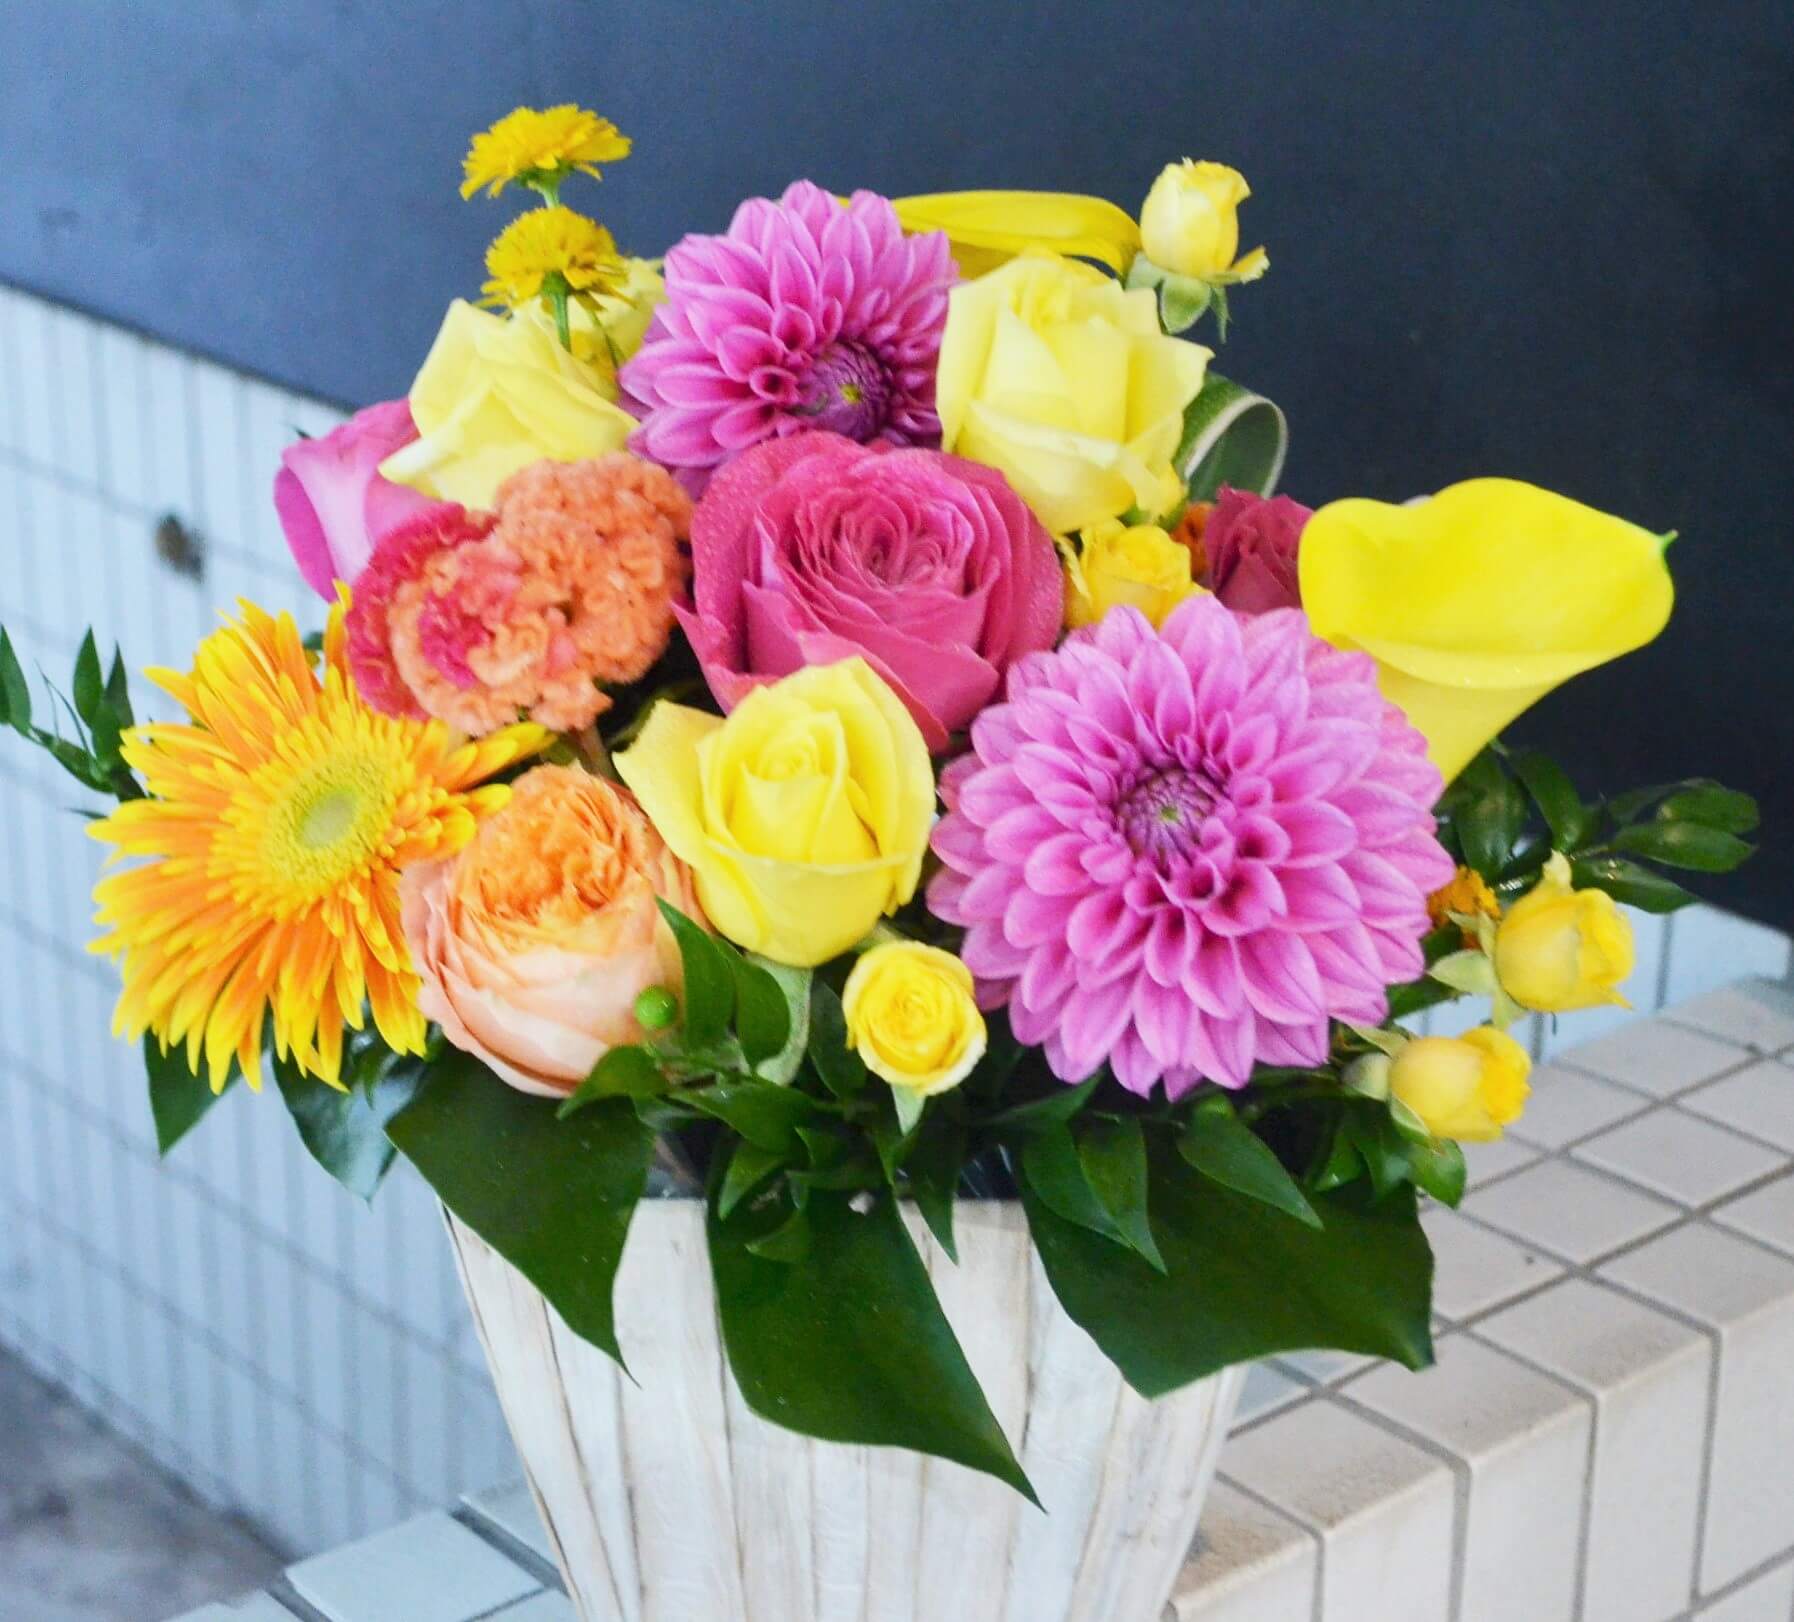 港区芝浦 愛育病院様へお届けした出産祝いの花 はなしごと